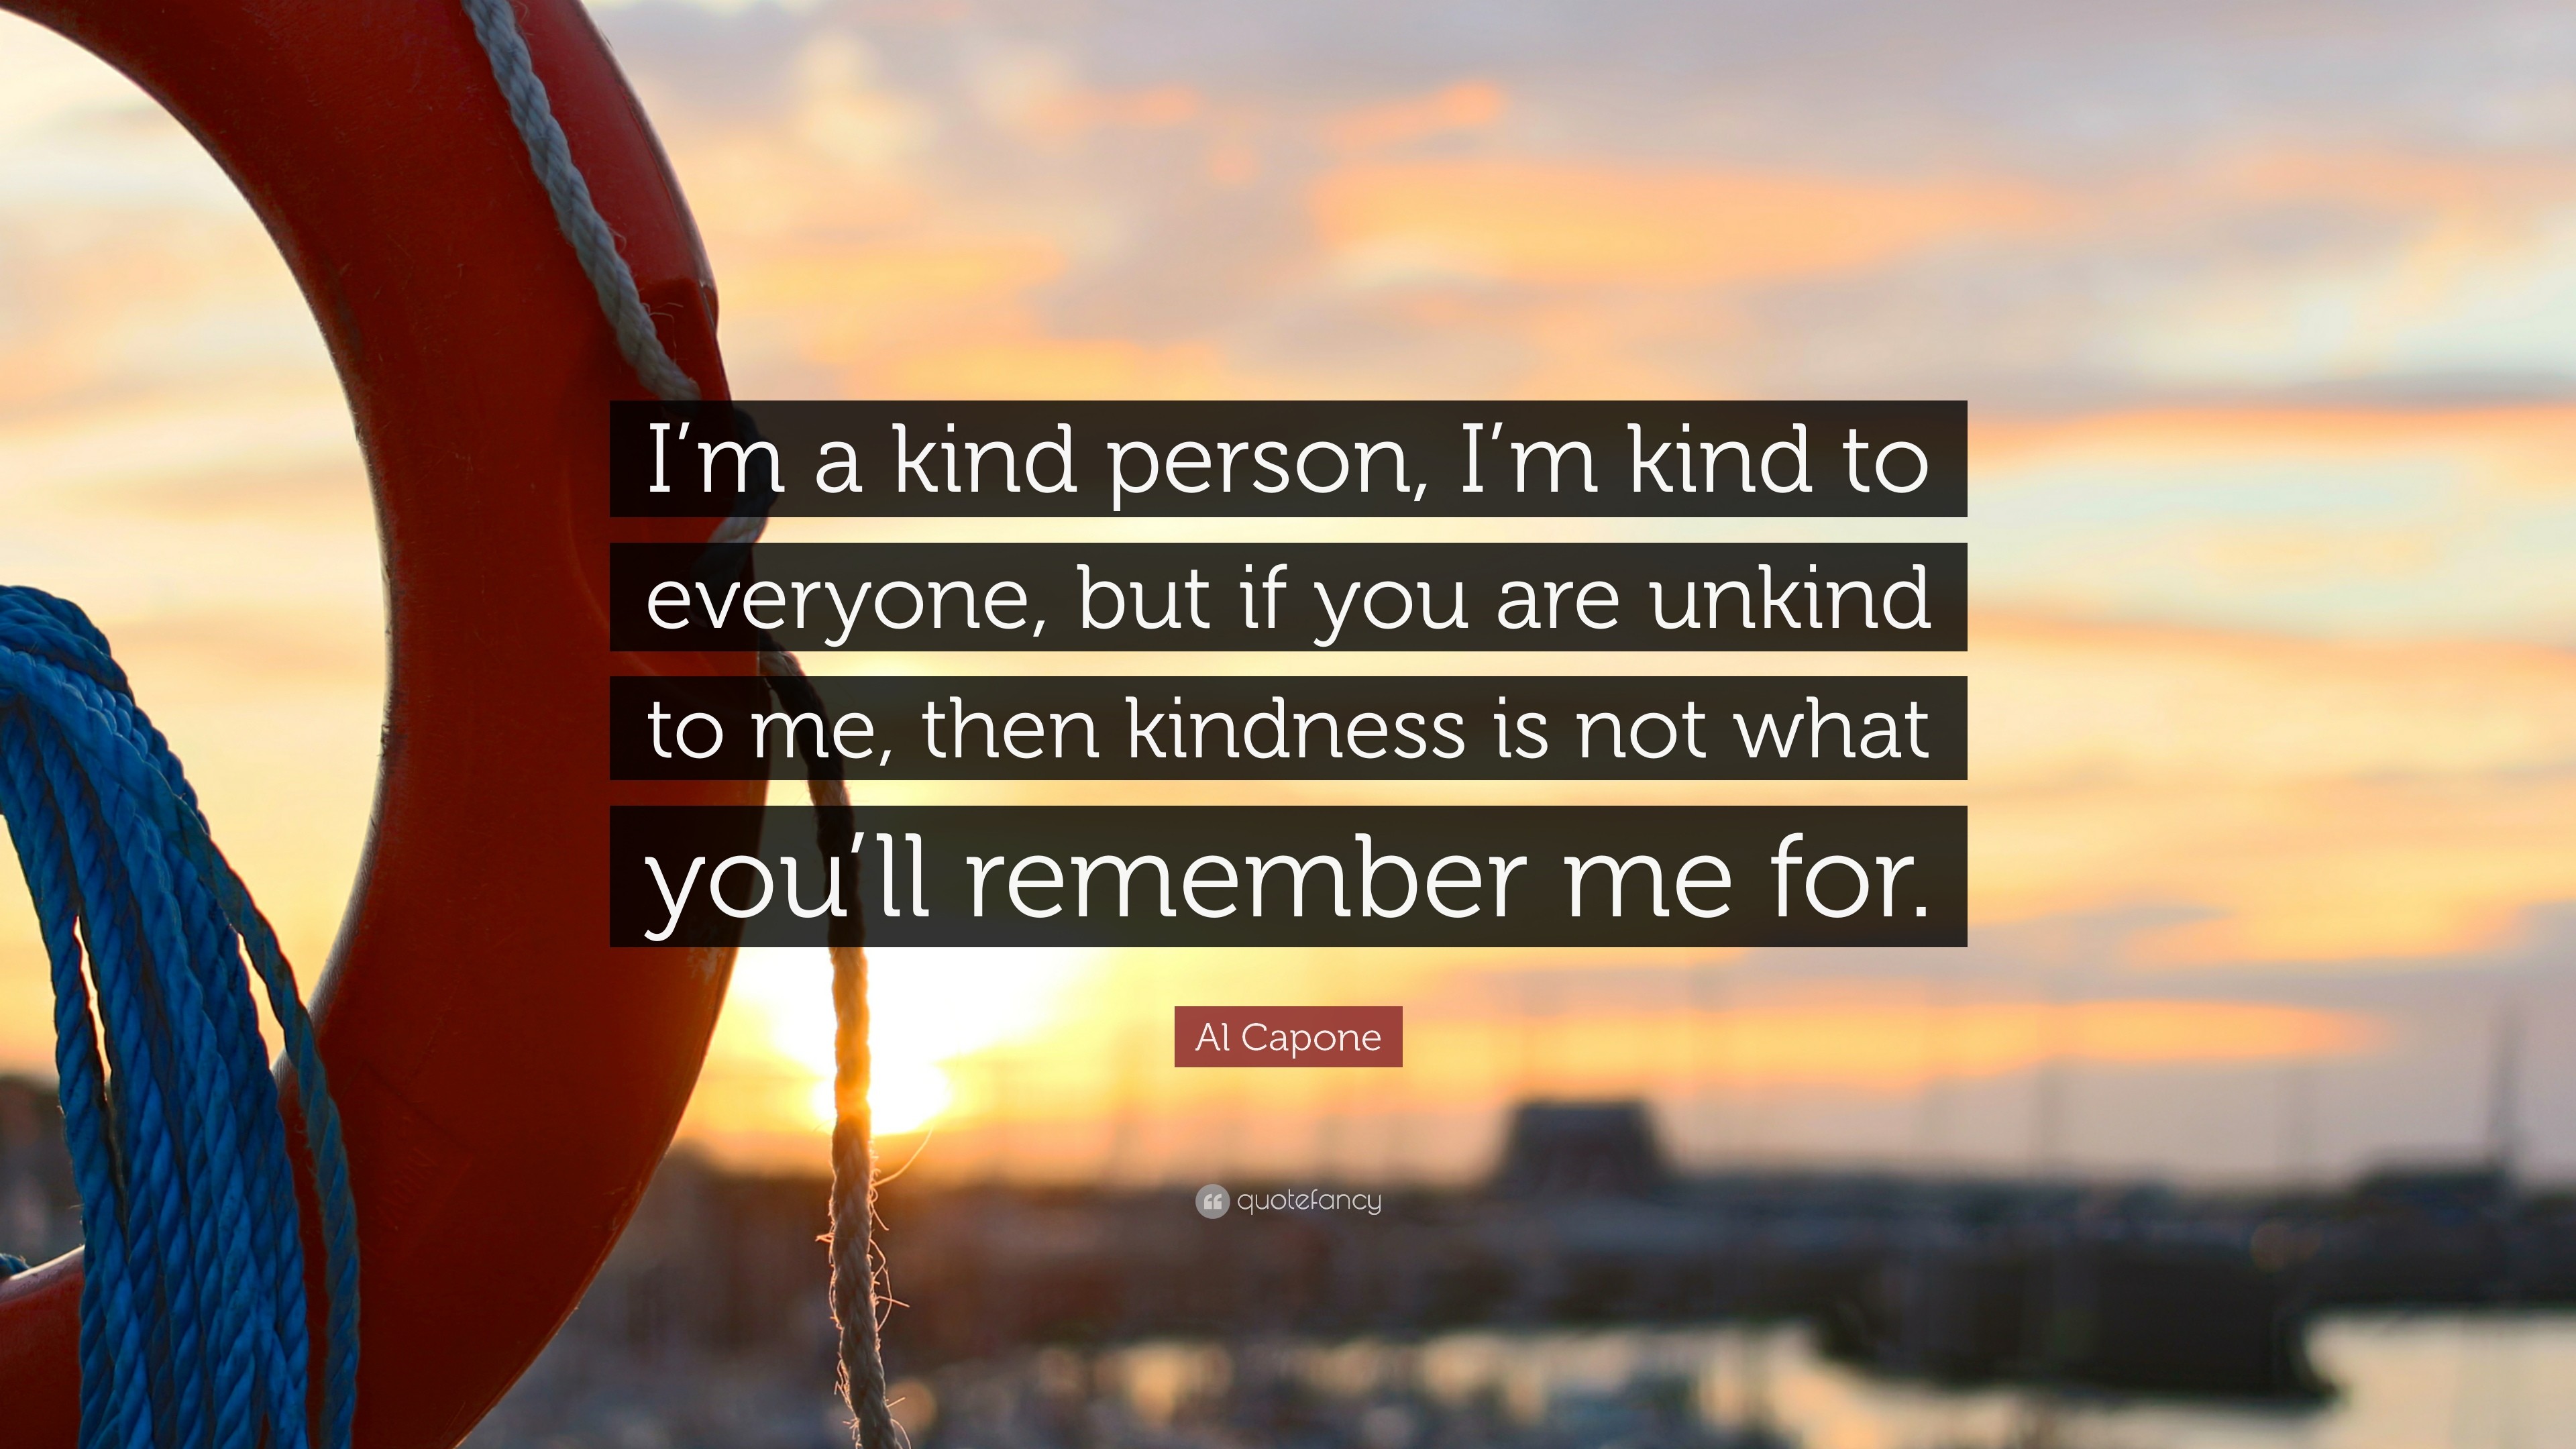 3840x2160 Al Capone Quote: “I'm a kind person, I'm kind